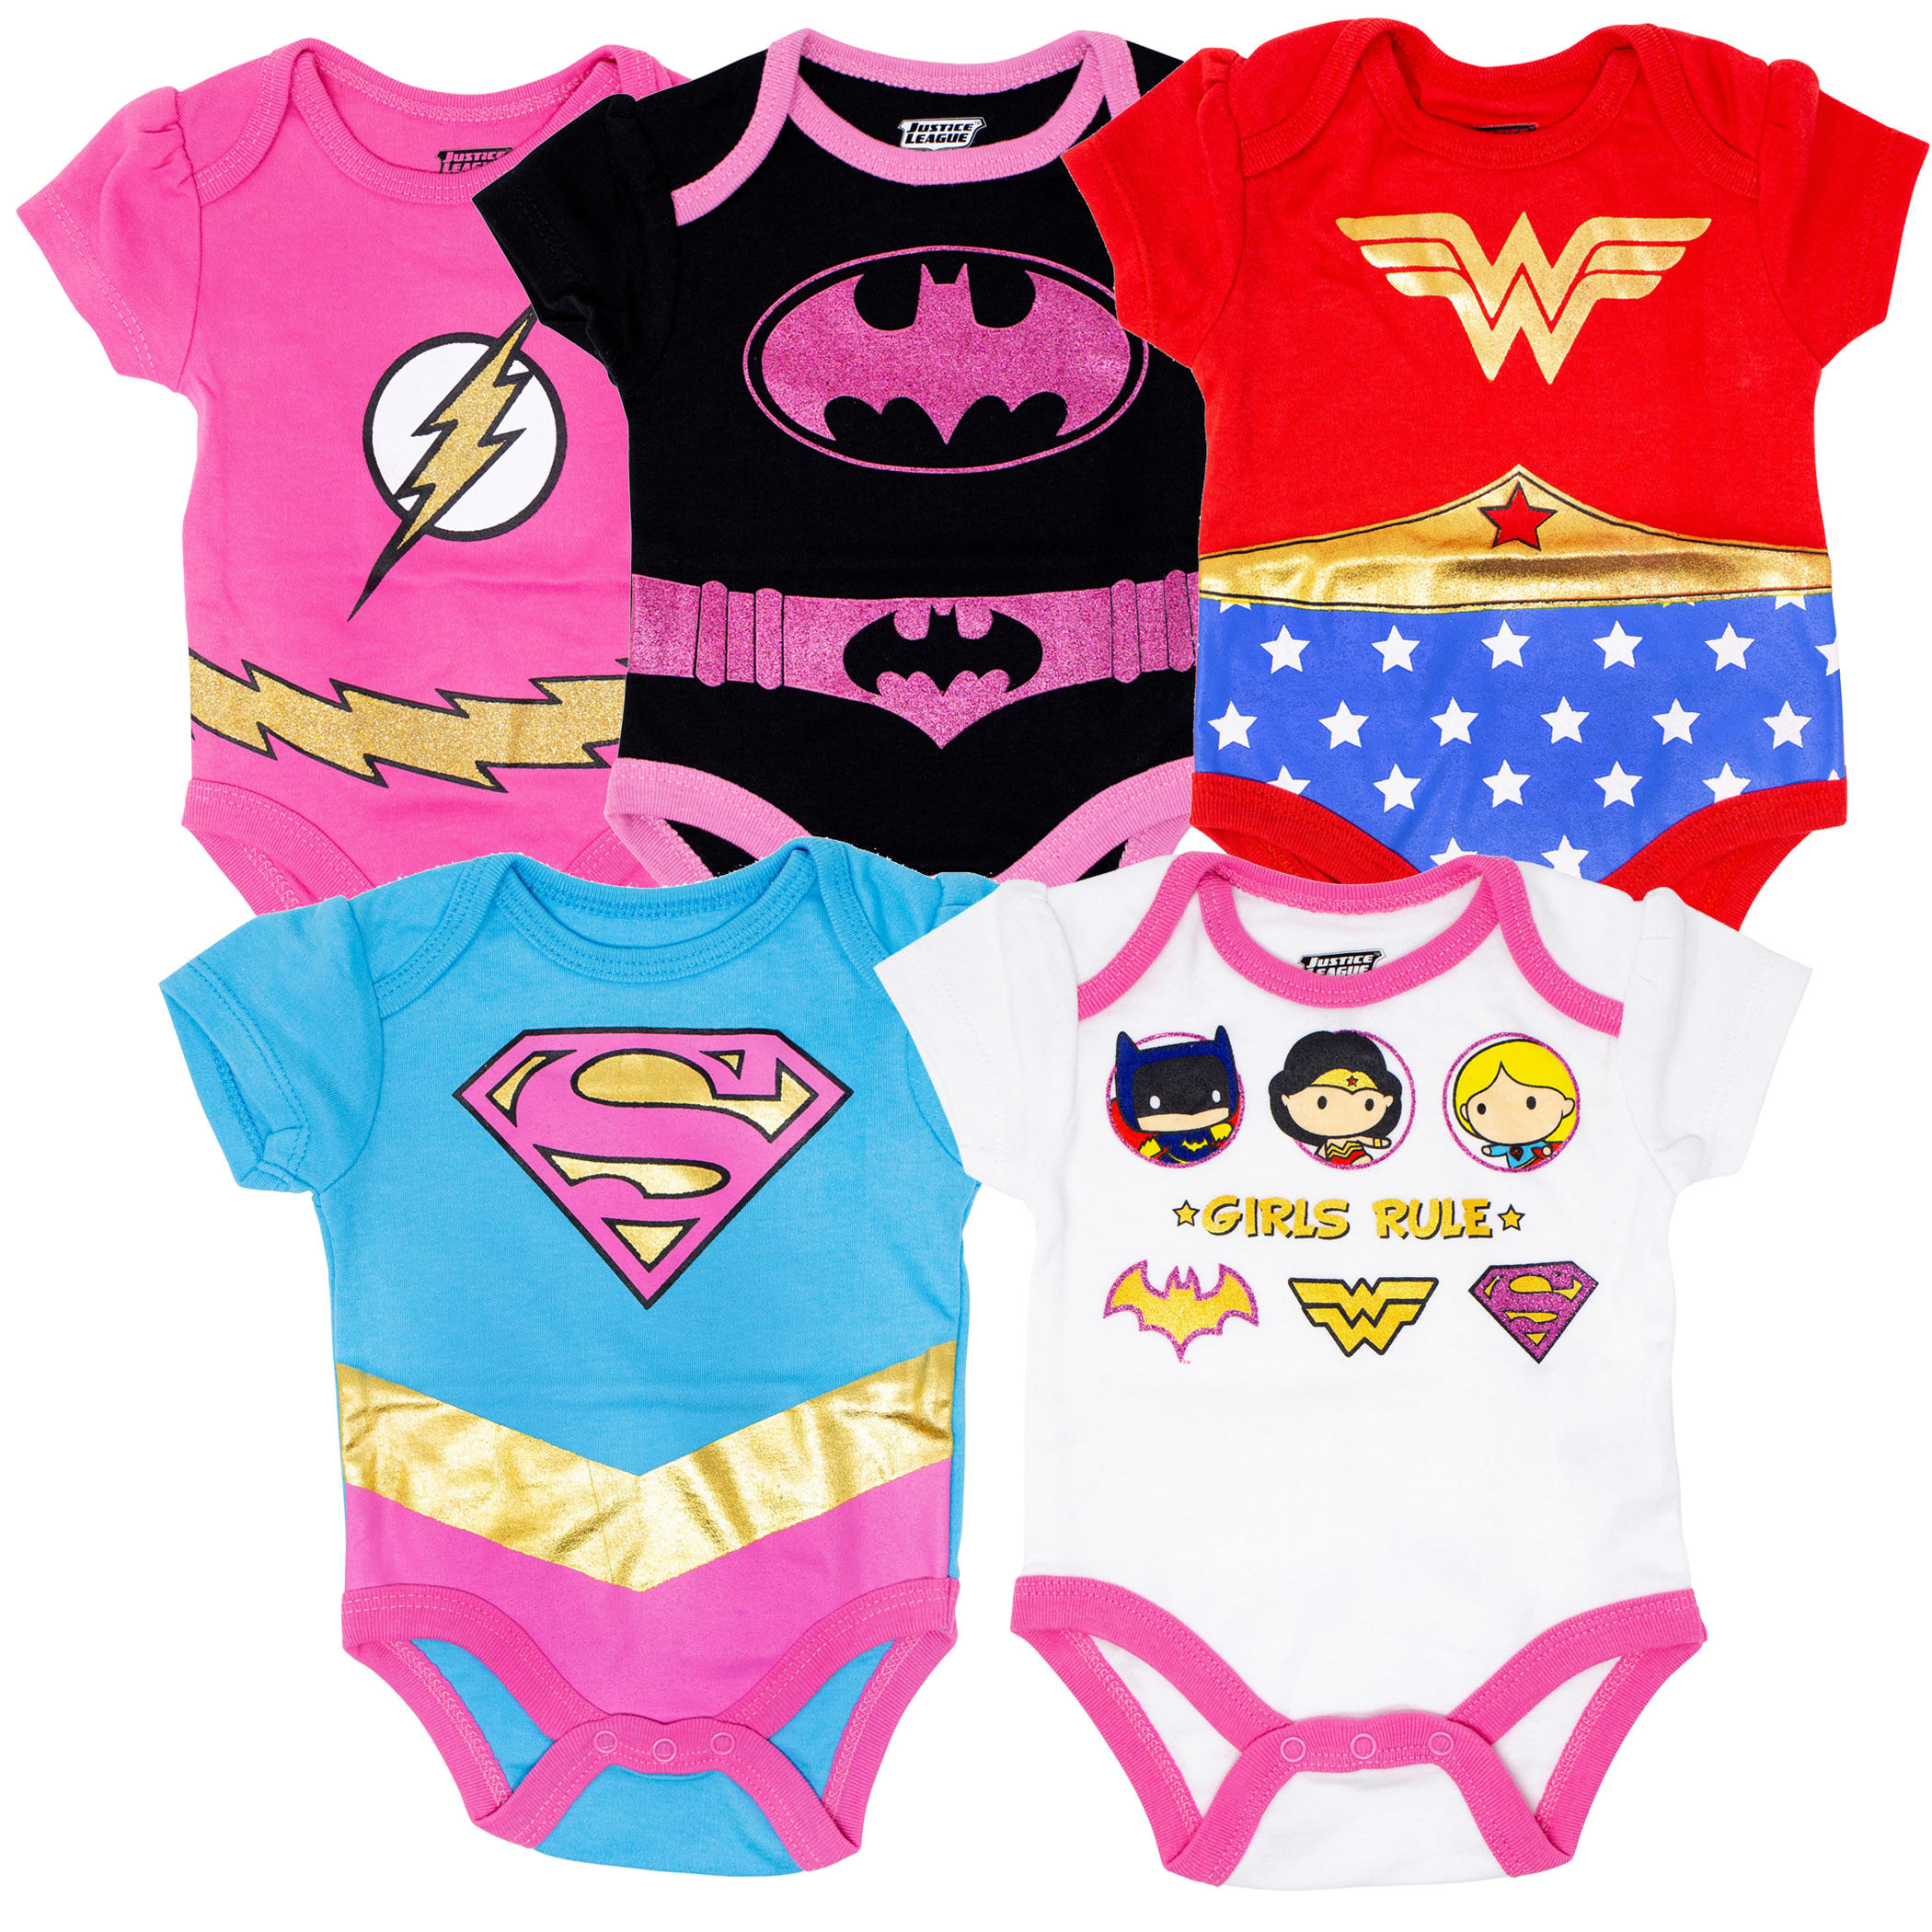 Justice League Girls Rule 5 Piece Infant Snapsuit Set